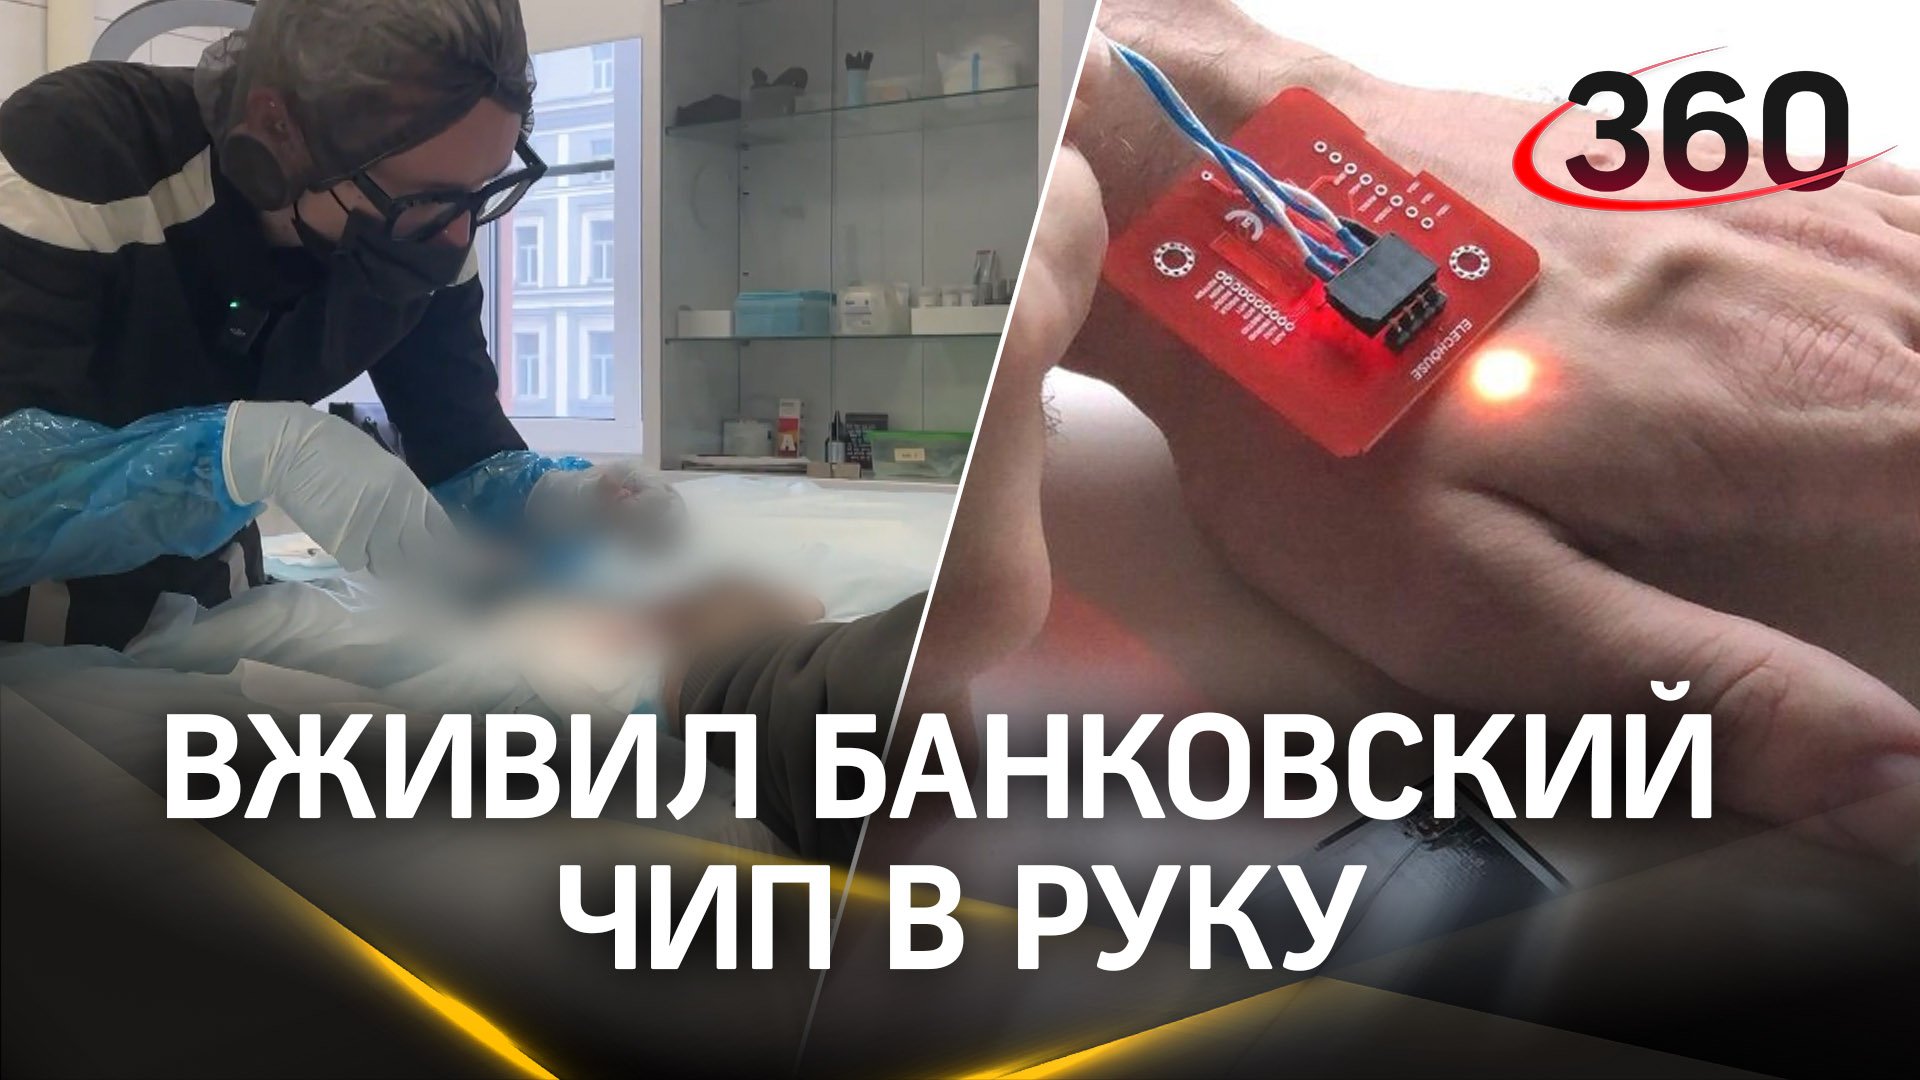 Россиянин вживил под кожу банковский чип по совету ИИ